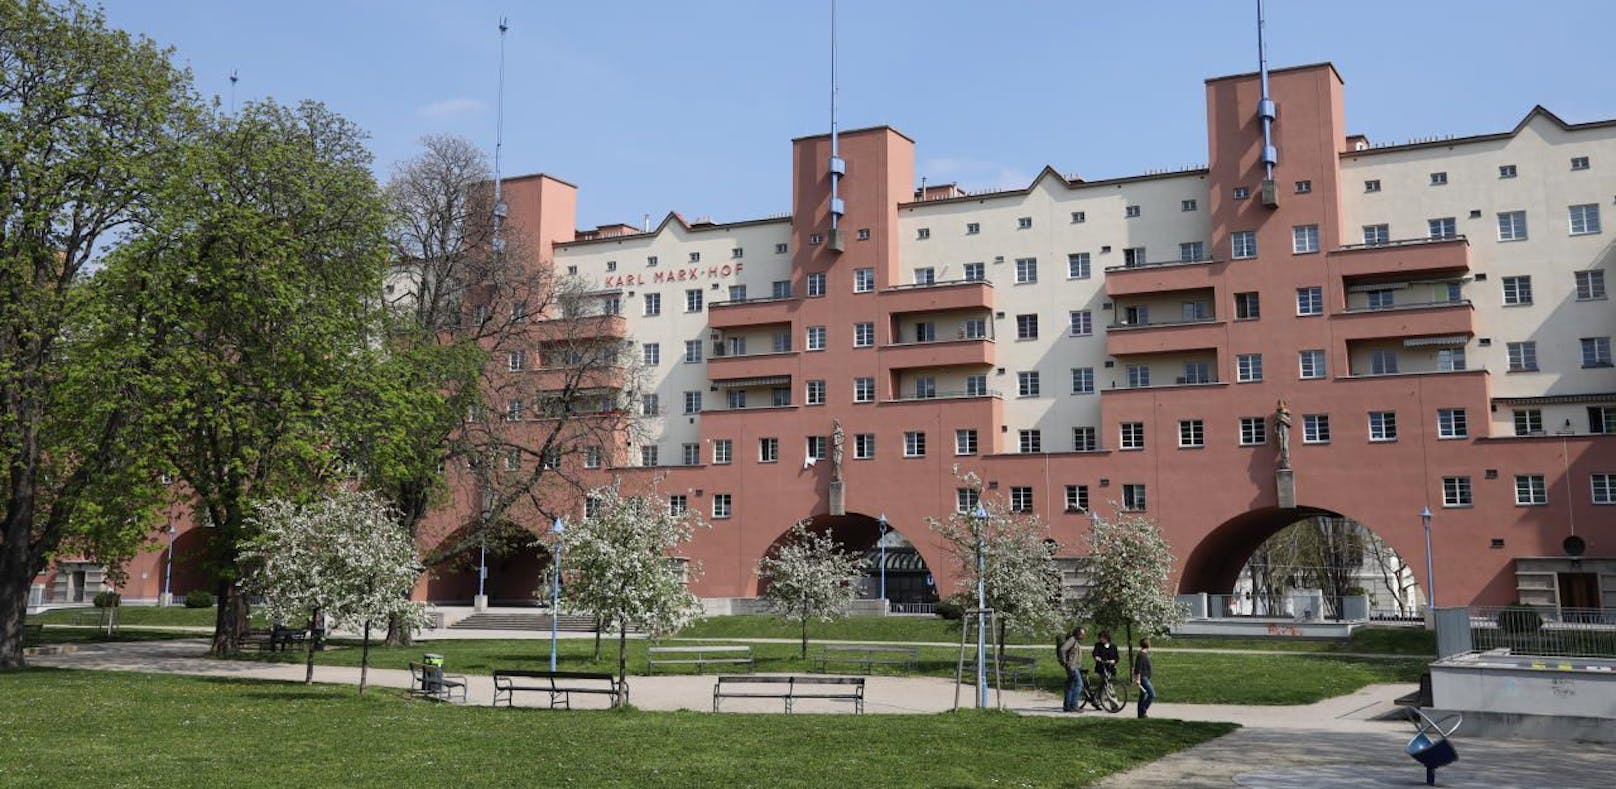 Einer der bekanntesten Gemeindebauten Wiens: Karl-Marx-Hof